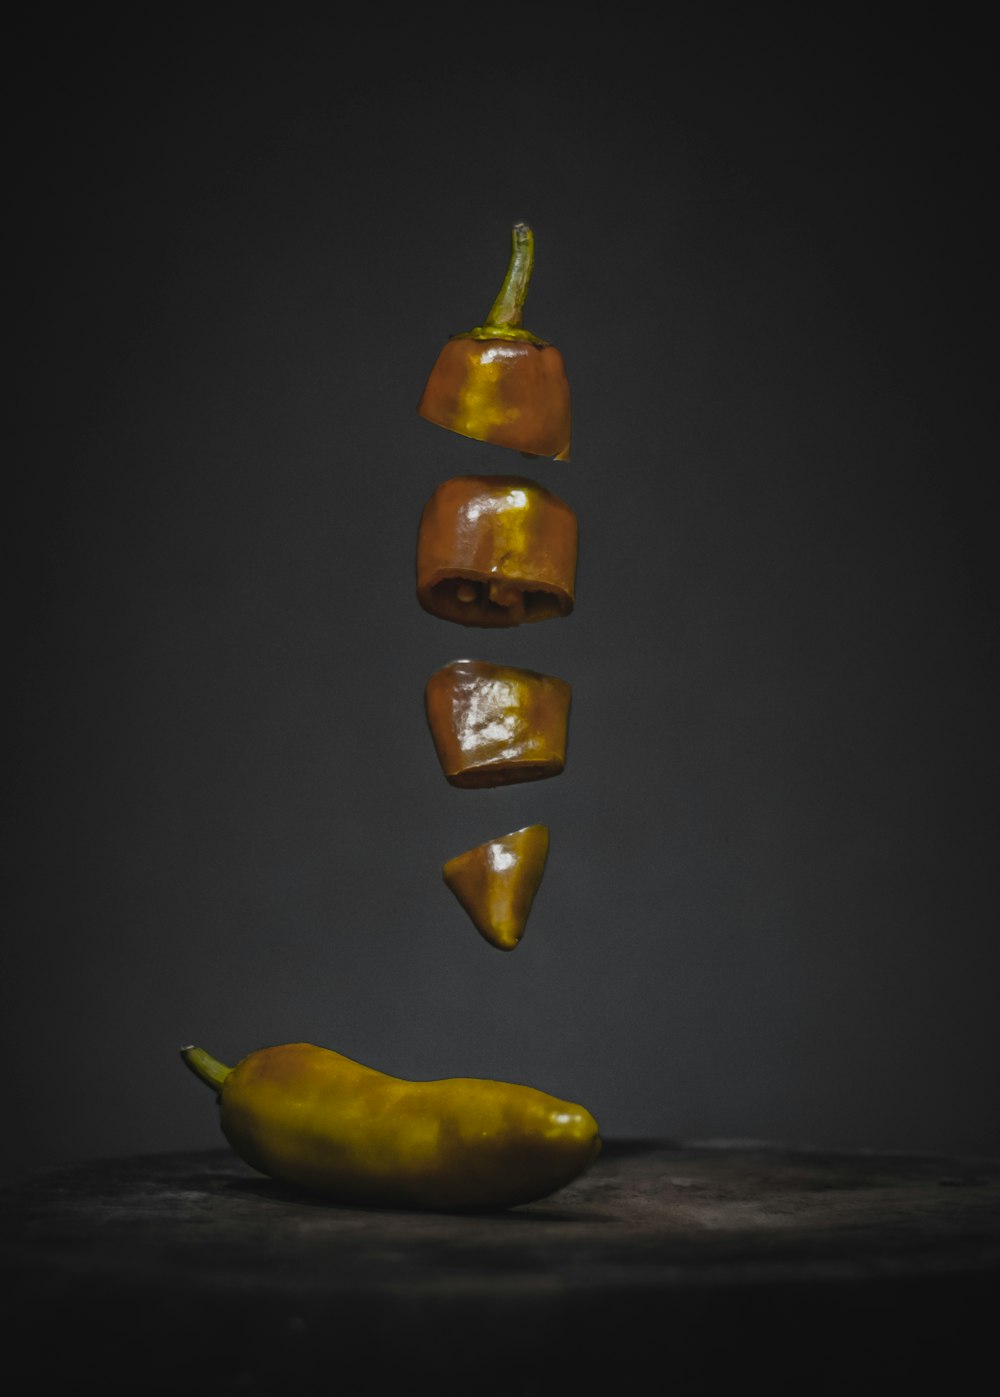 um pimentão amarelo caindo em uma pilha de pimentas